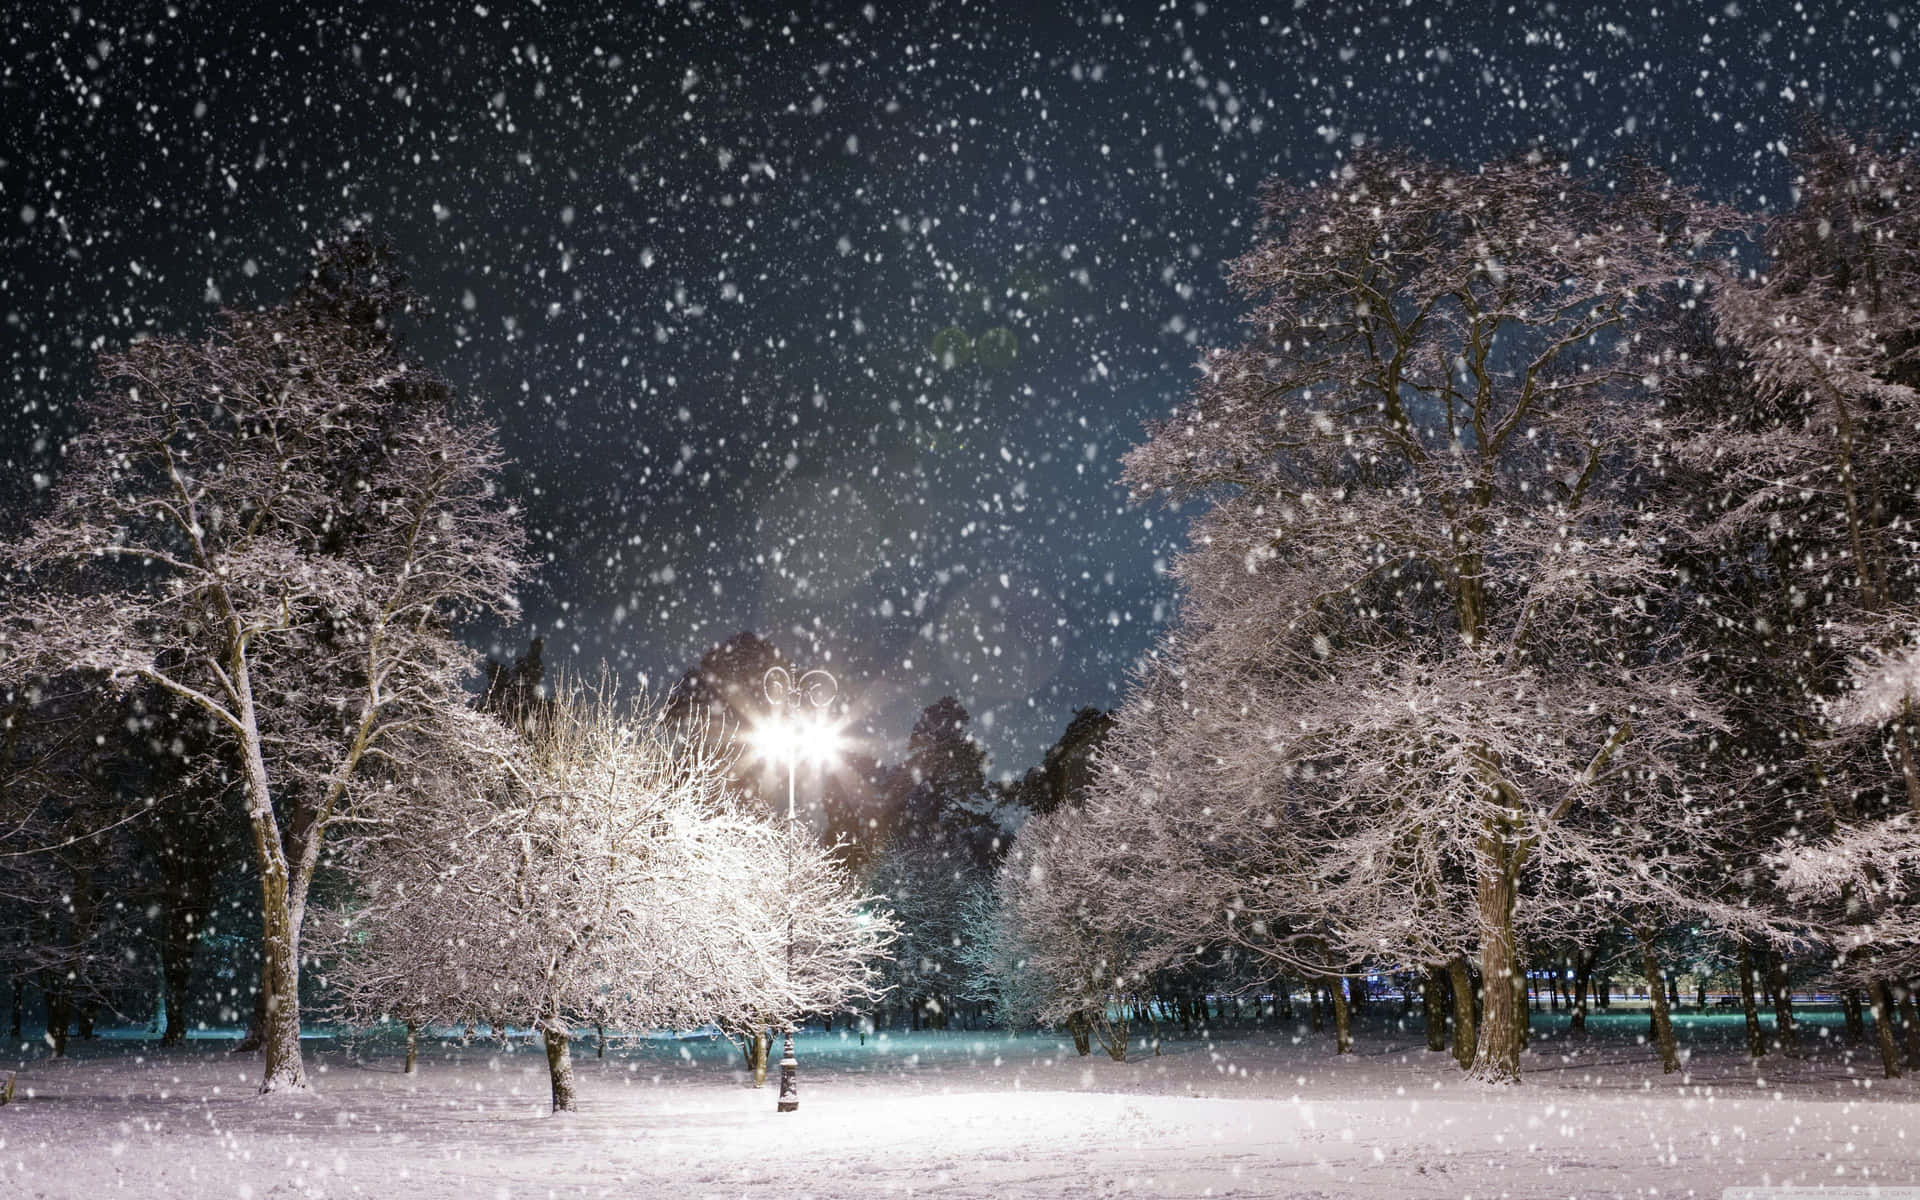 Enjoy a Snowy Winter's Night on the Desktop Wallpaper